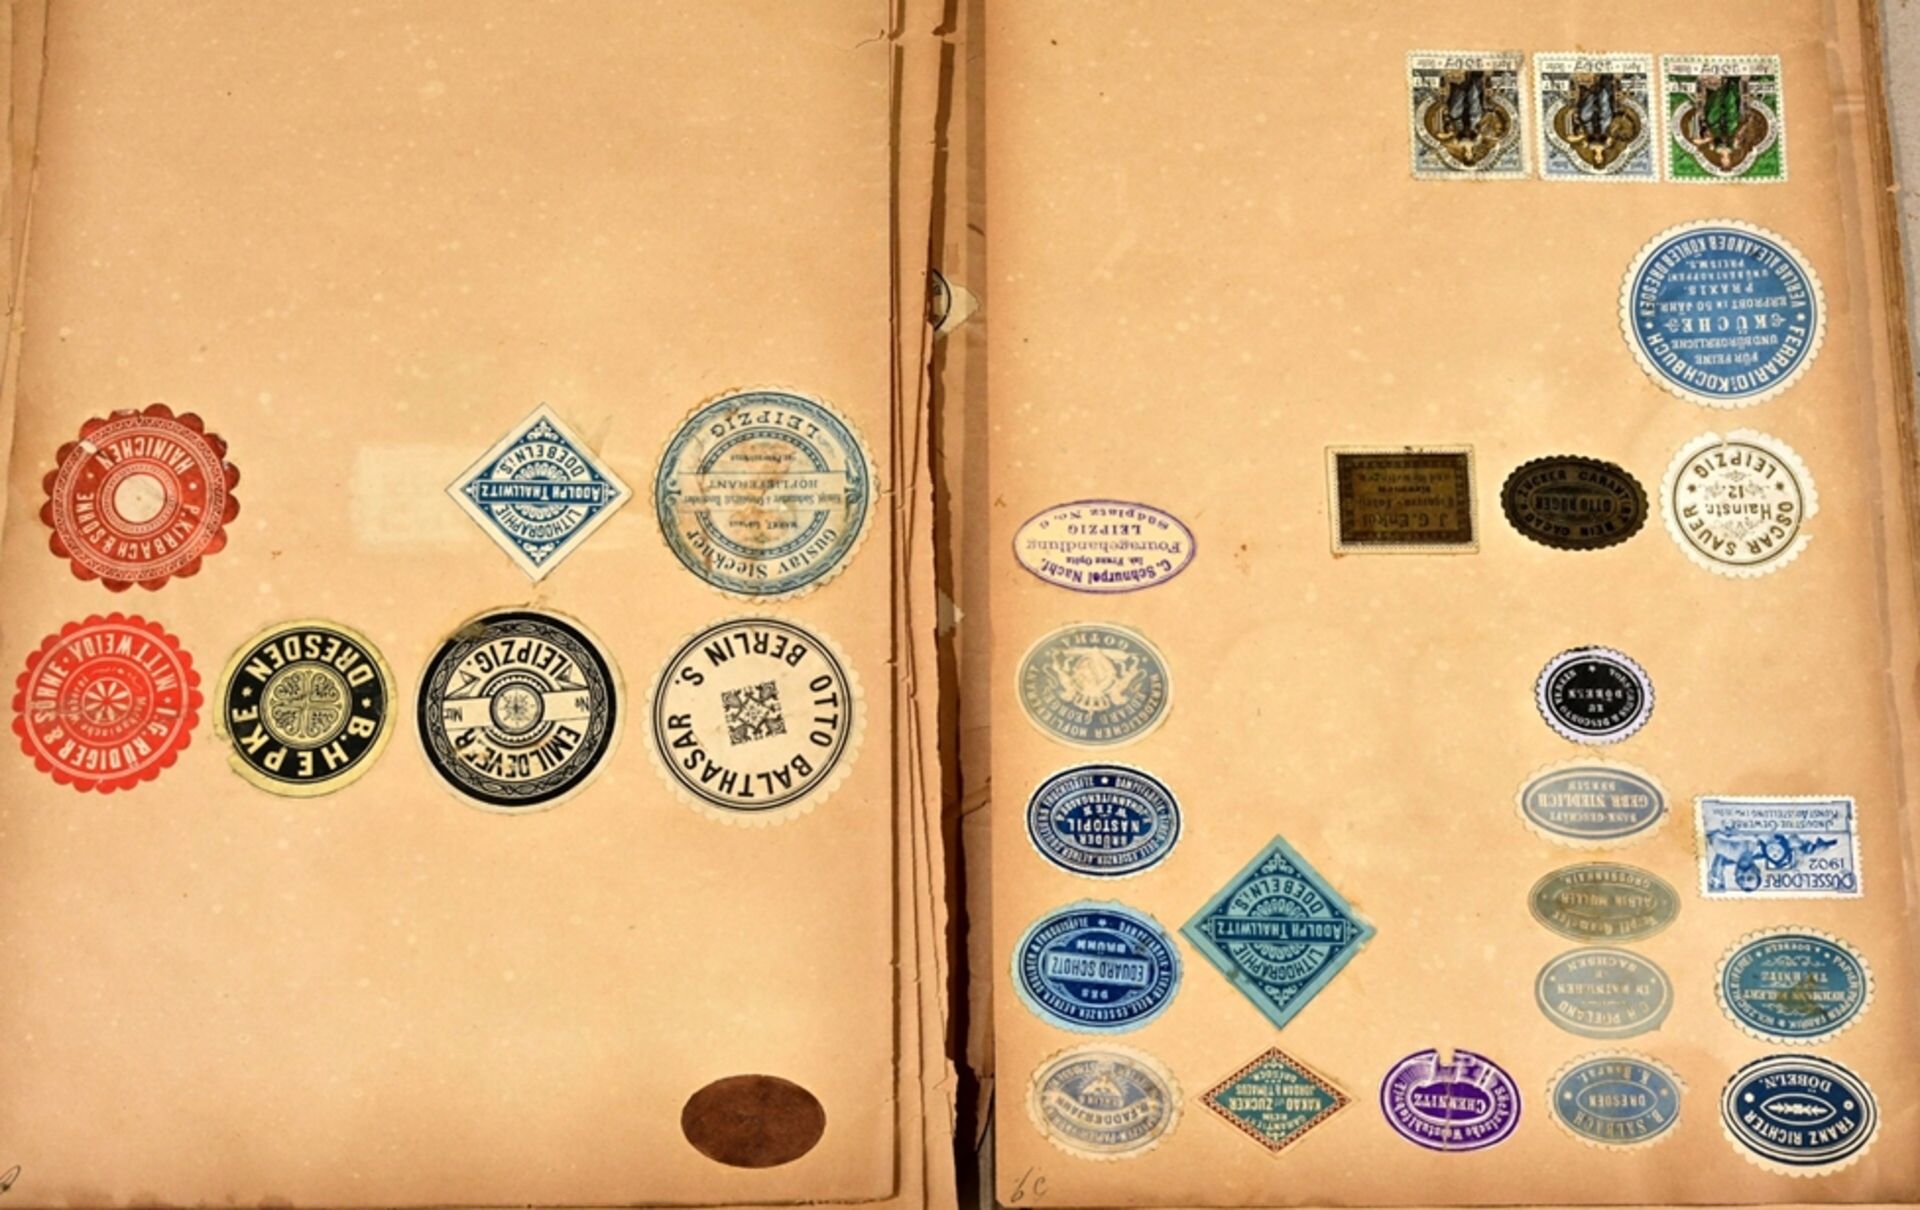 Umfangreiche Siegelmarken - Sammlung überwiegend Sachsen betreffend, lose Blätter mit Papiersiegels - Bild 5 aus 8